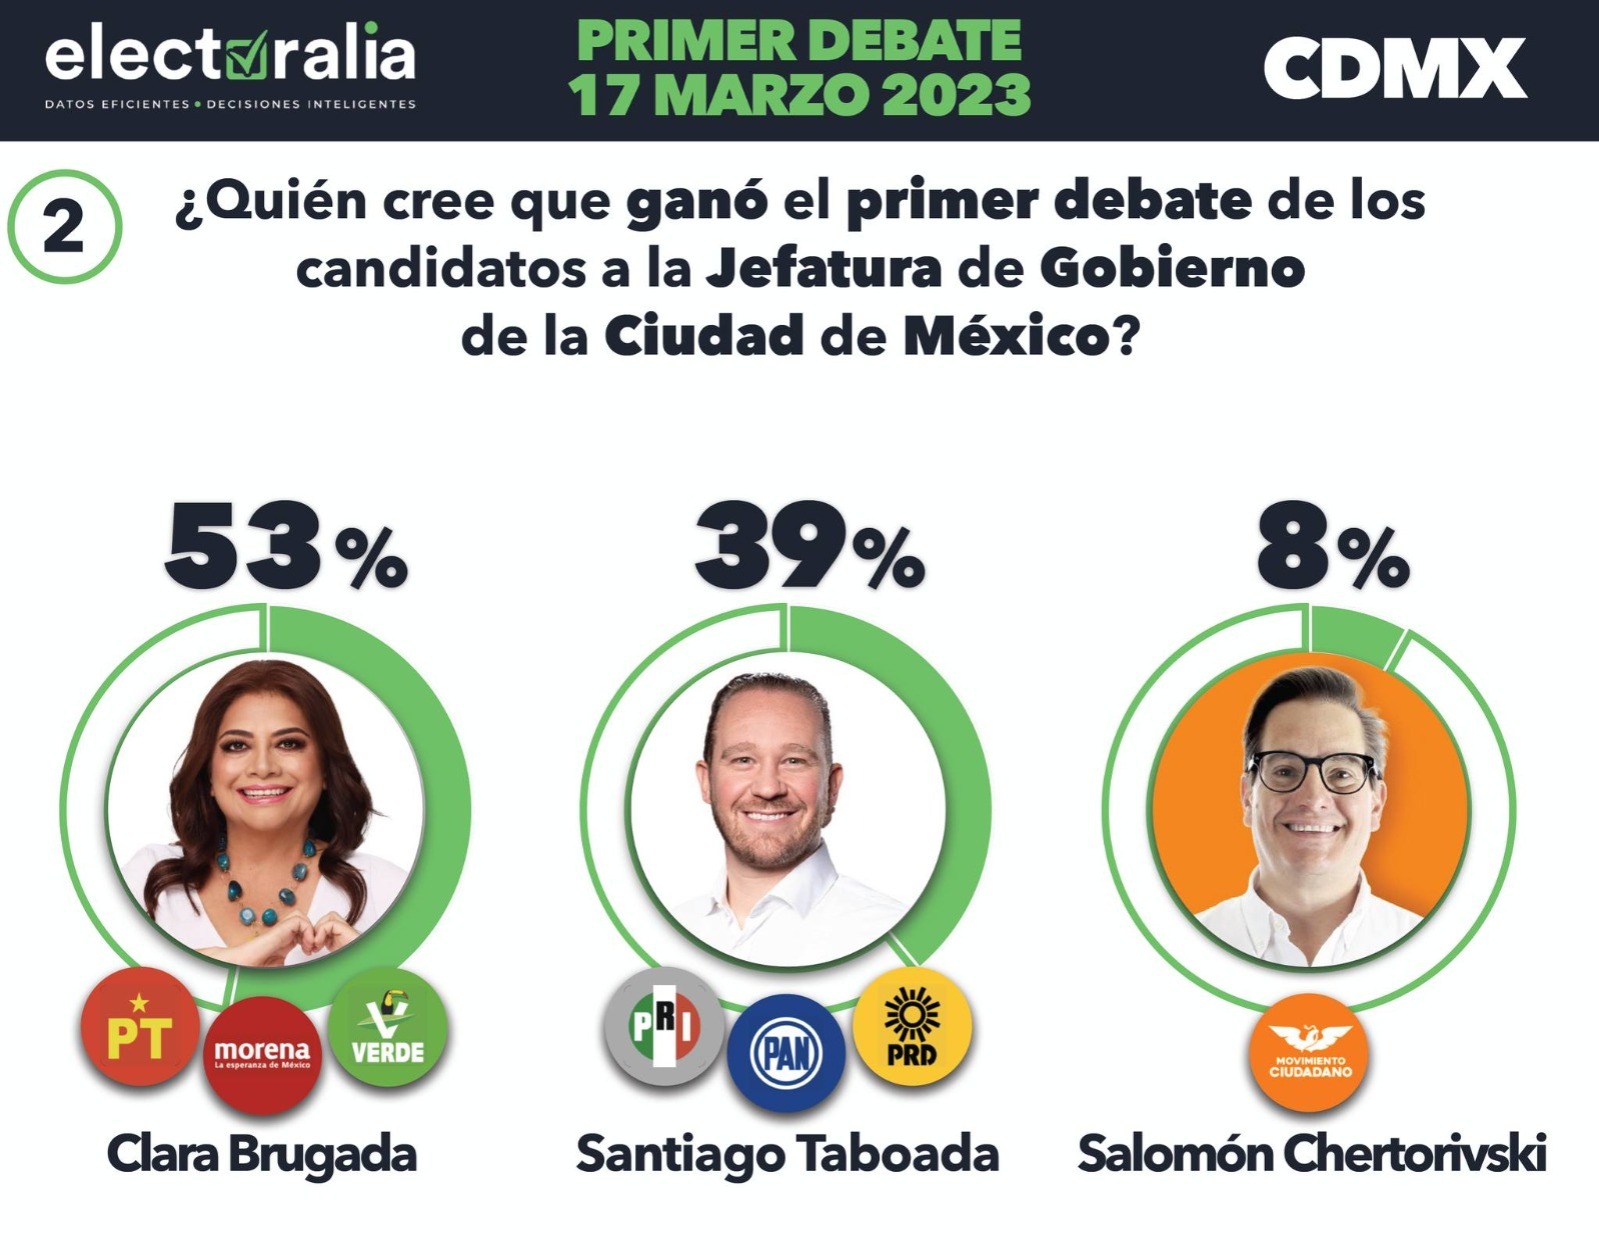 Clara Brugada gana debate: Encuesta 